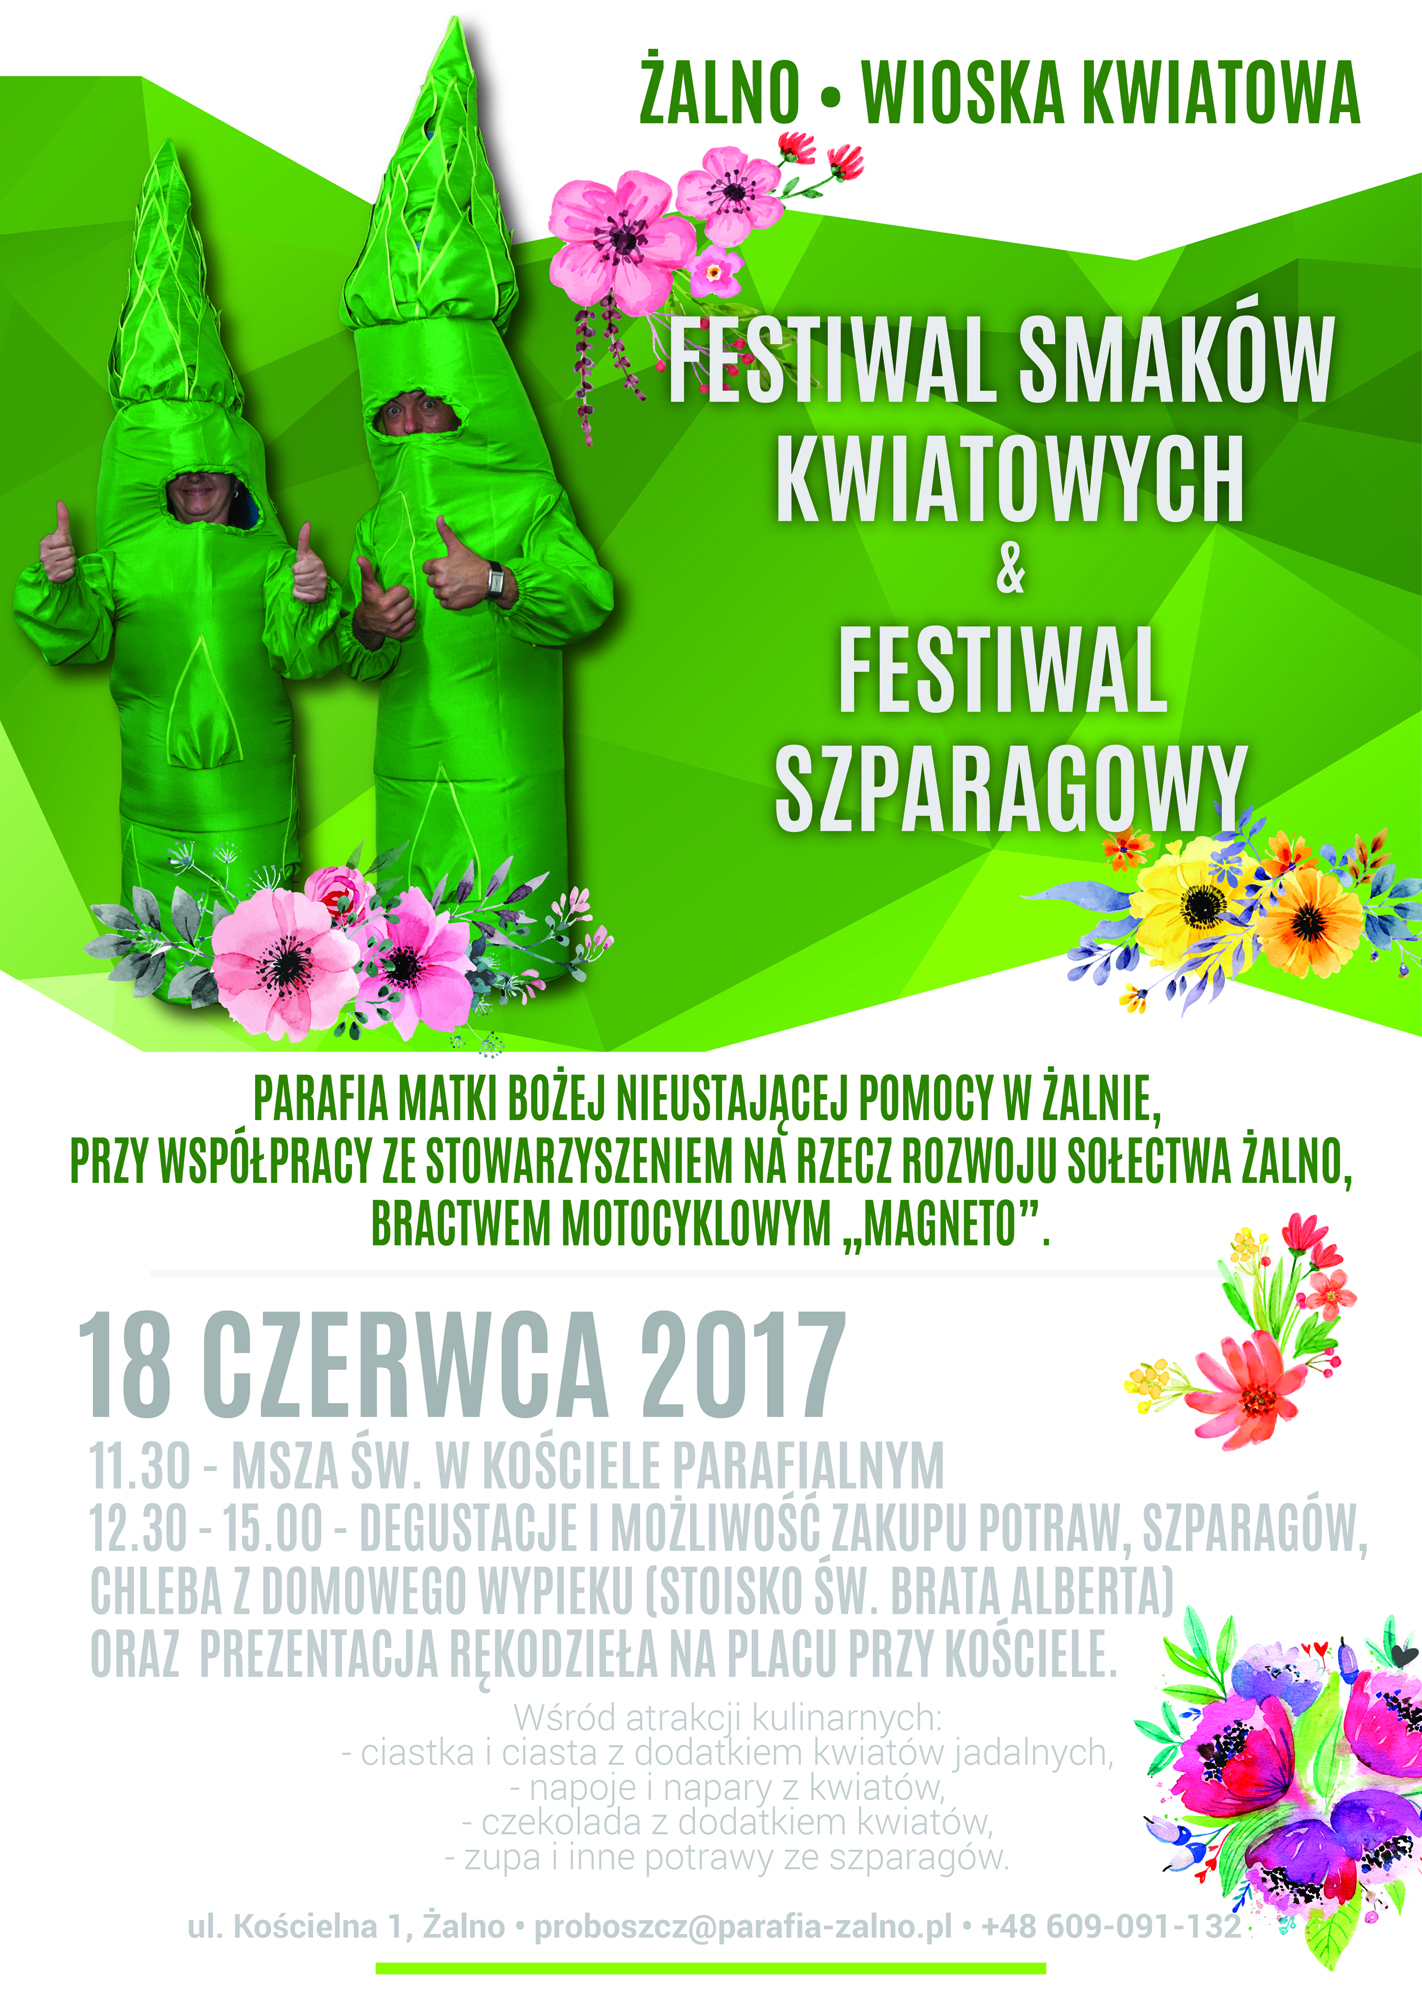 Festiwal smaków kwiatowych oraz szparagowych 